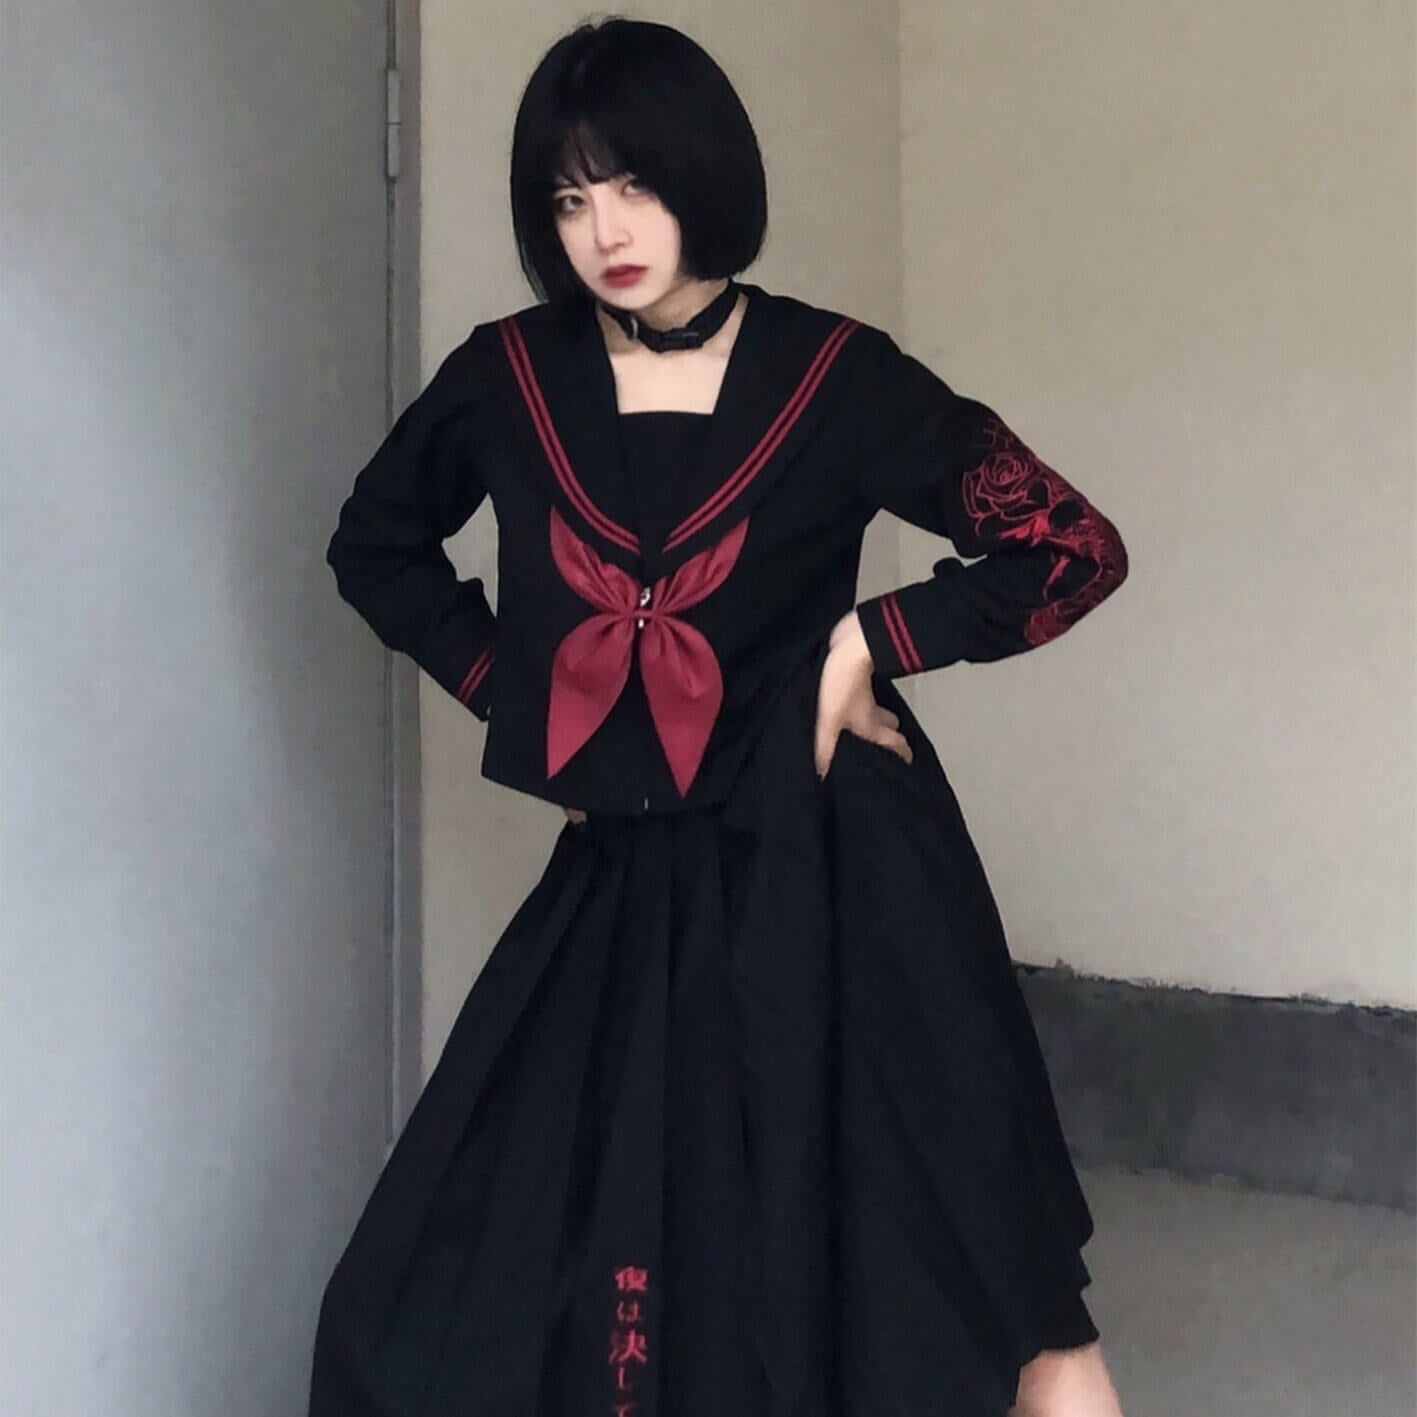 [Butterfly Skull] Dark girl JK uniform set – Cutiekill